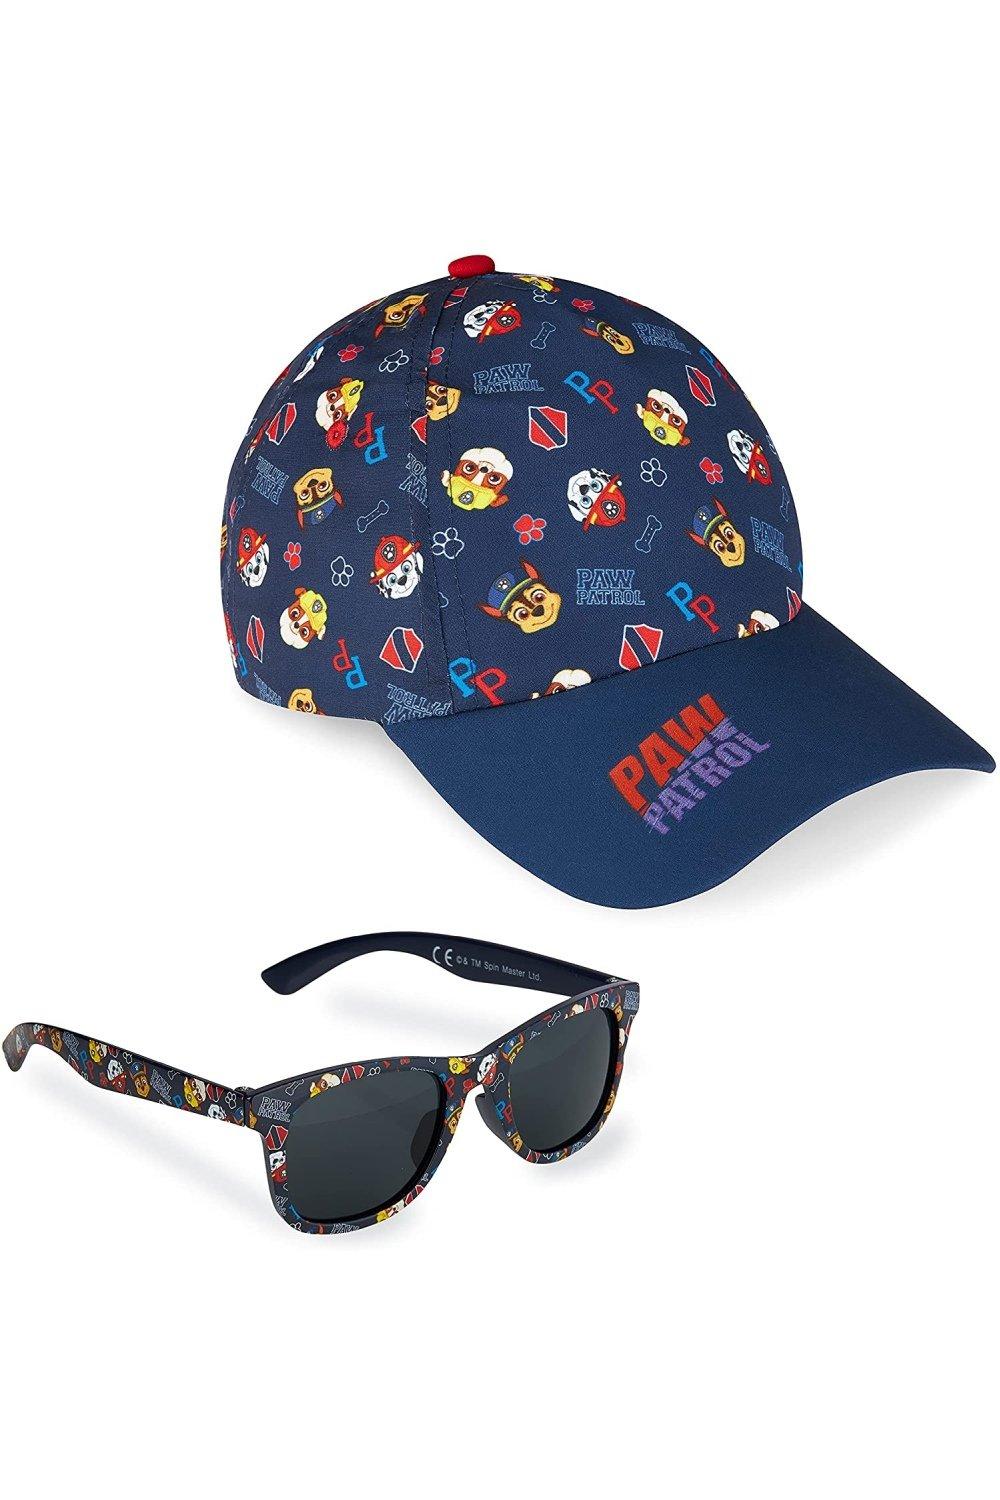 Бейсболка и солнцезащитные очки Aop Paw Patrol, синий удобная солнцезащитная шляпа ветрозащитная сетчатая летняя спортивная шапка шарф с повязкой на голову бейсболка велосипедная шапочка